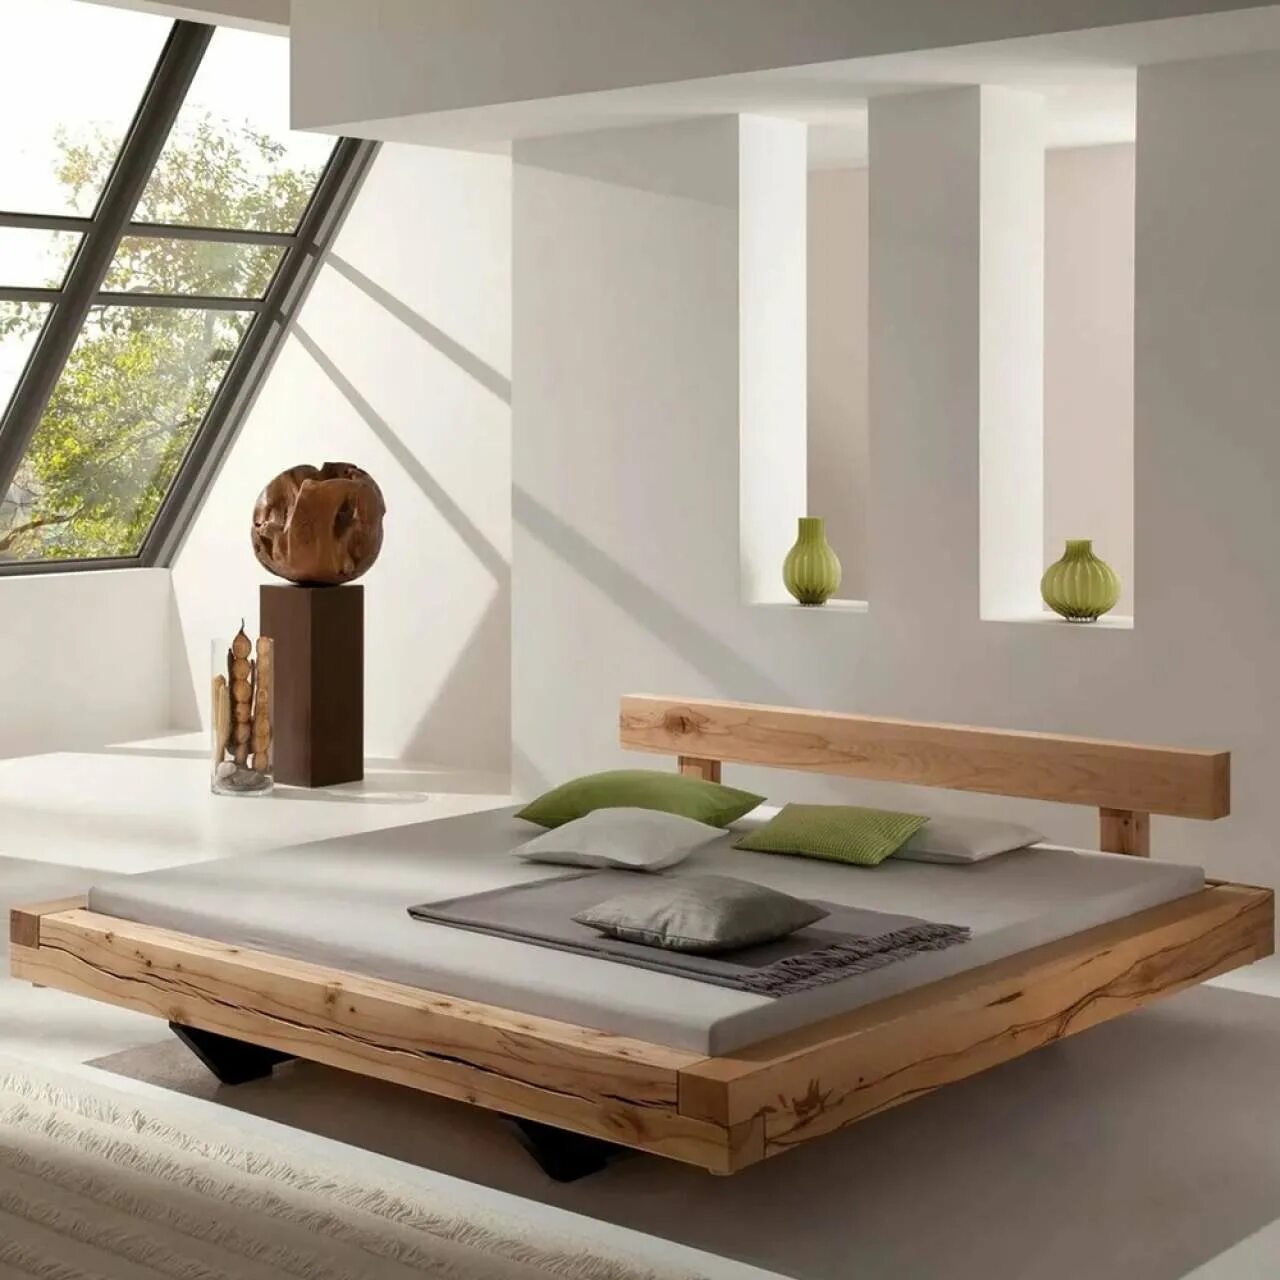 Wooden мебель. Оригинальные кровати. Стильные деревянные кровати. Дизайнерские кровати из дерева. Кровать деревянная современная.